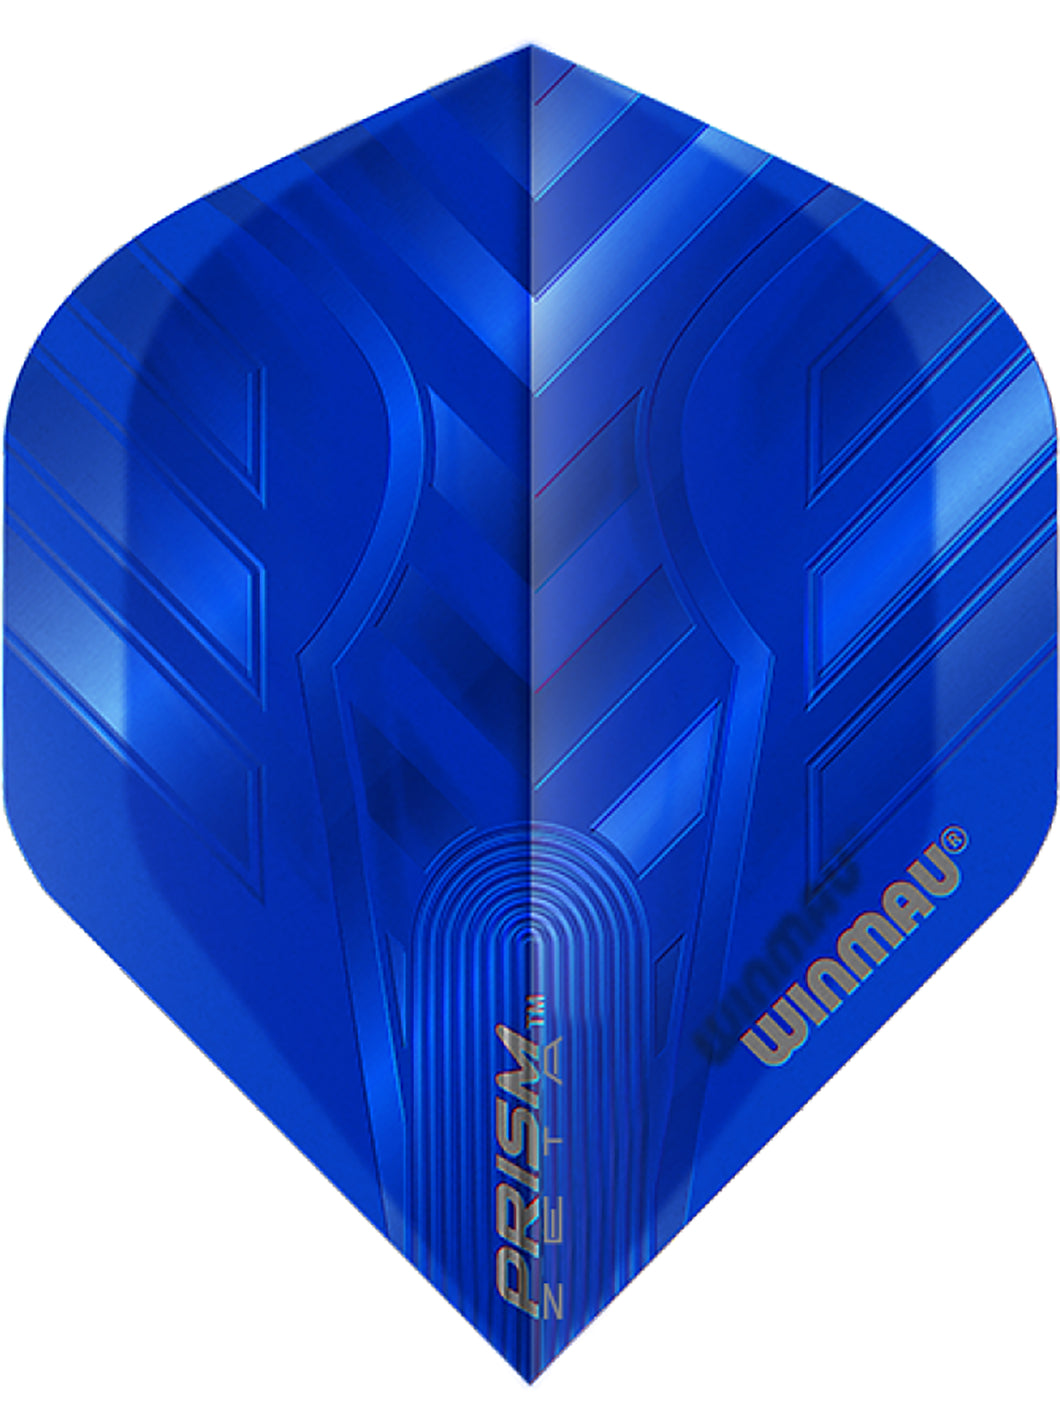 Winmau Prism Zeta Standard Shape Dart Flights - Blue